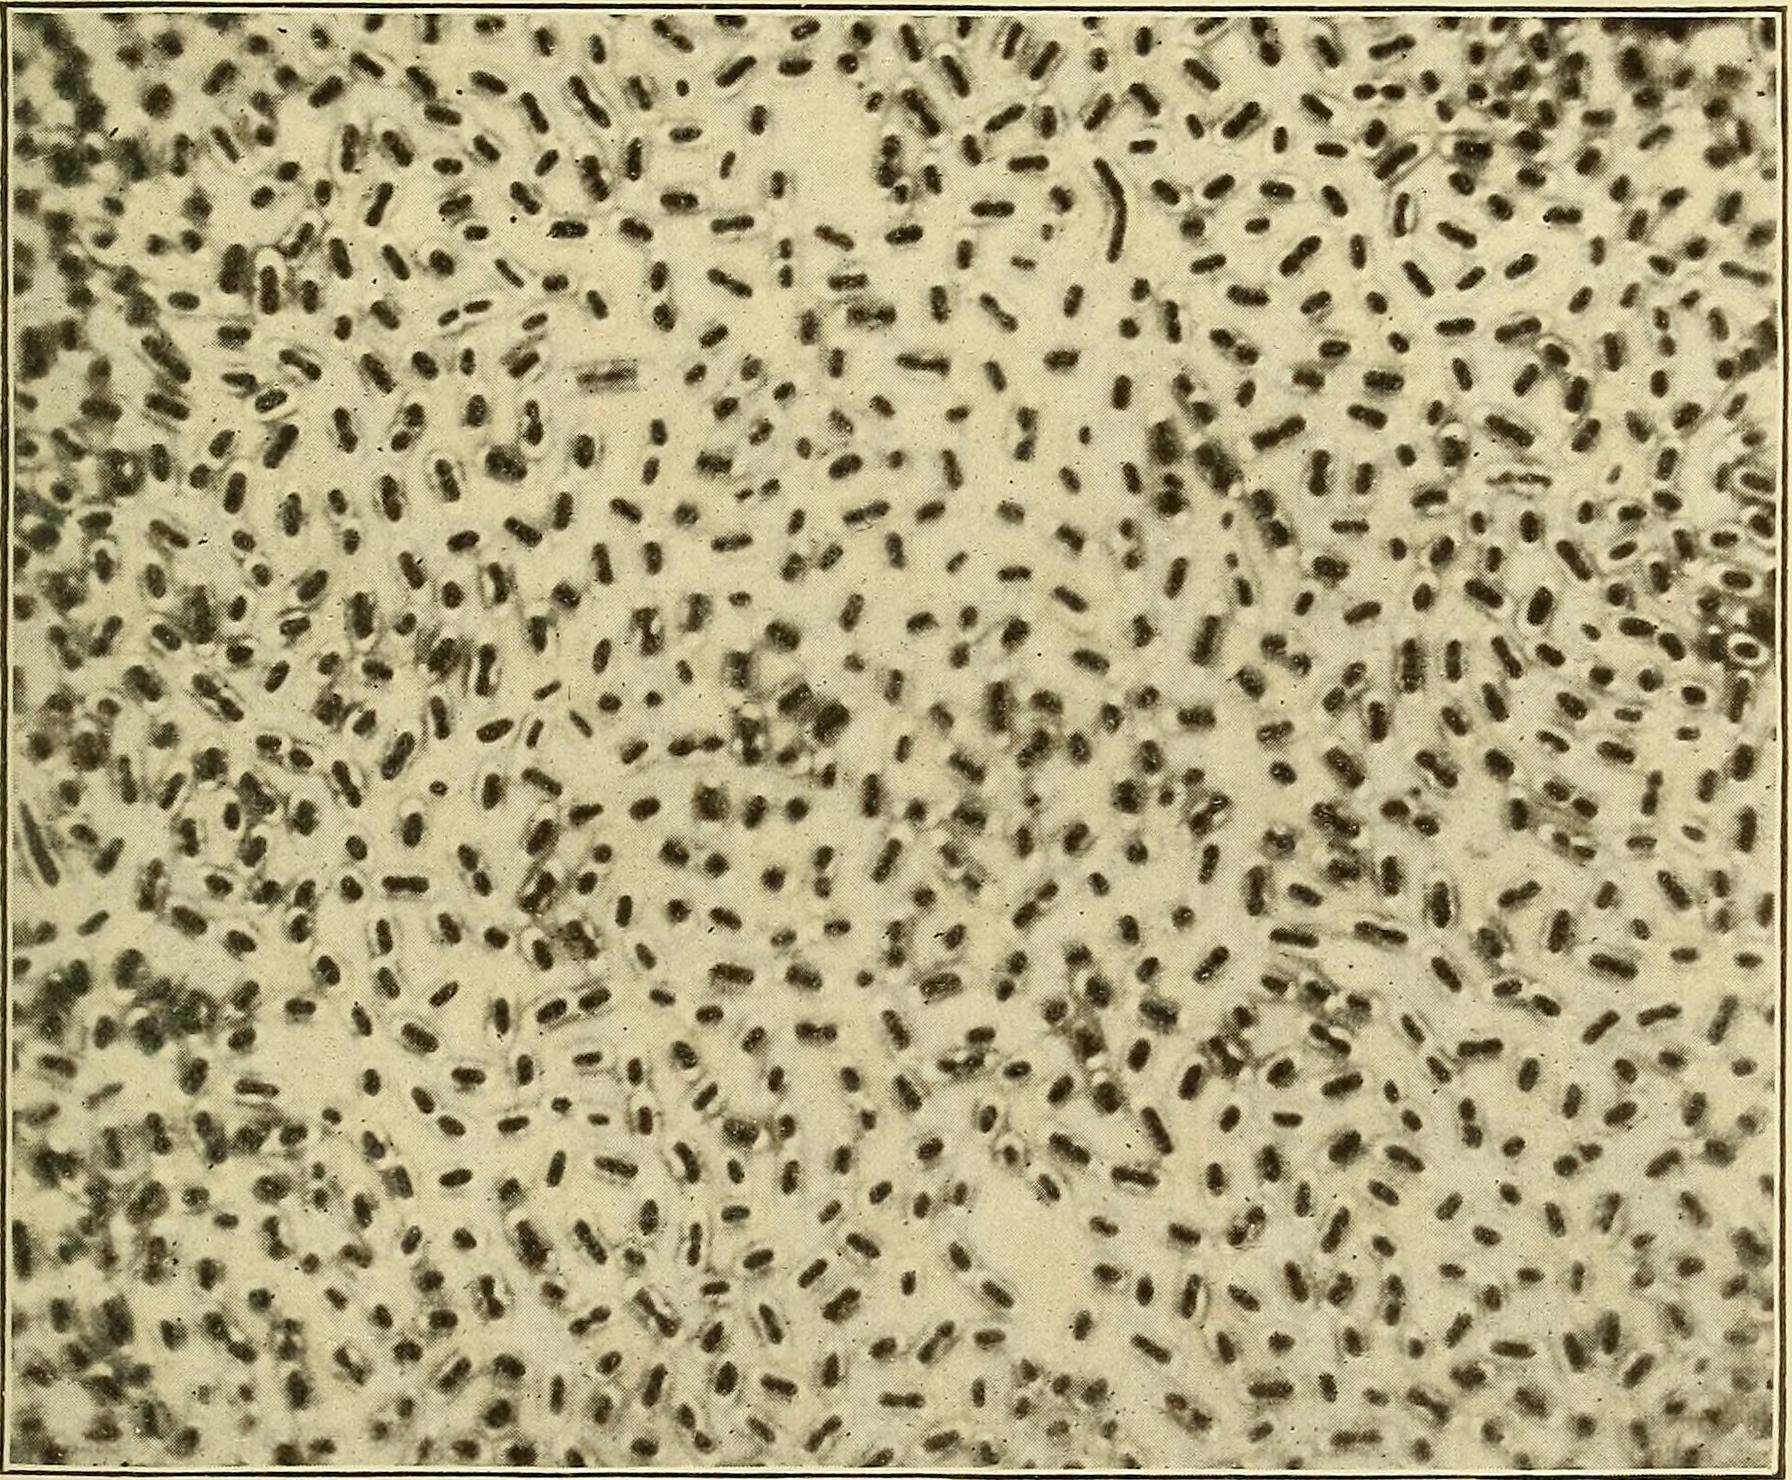 A microscope image of Bacillus mucosus capsulatus, a small rod-shaped bacteria.